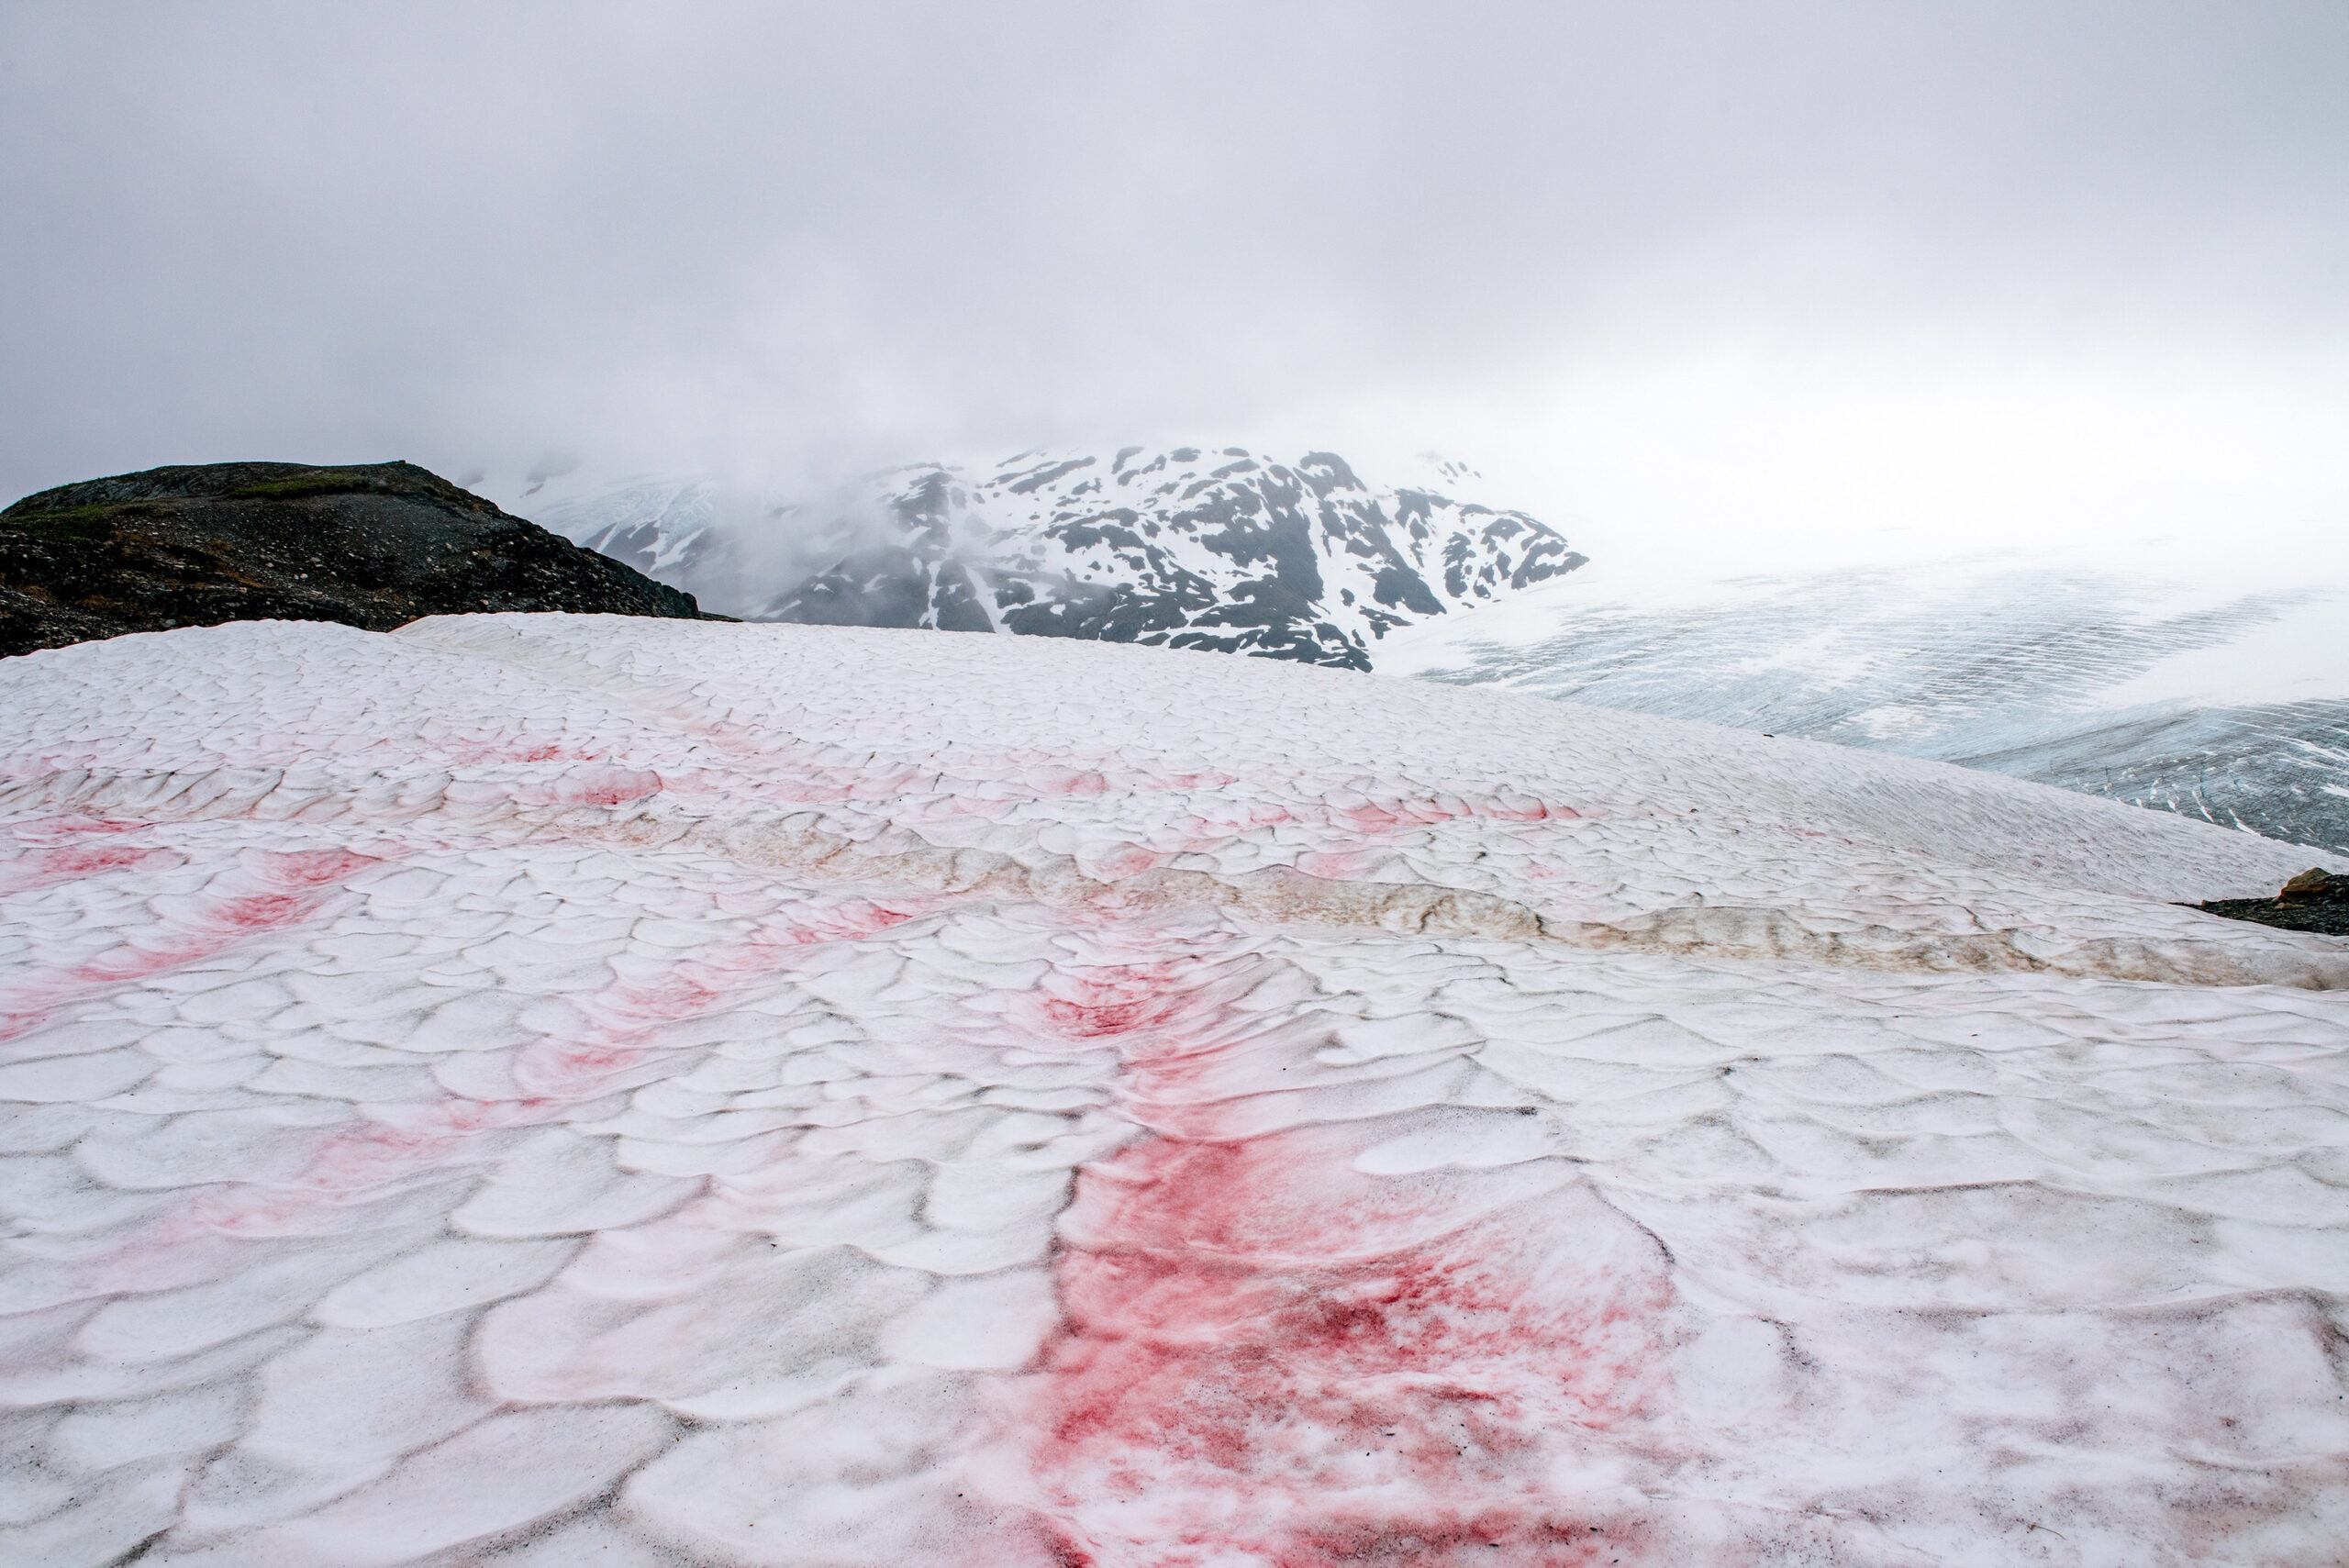 Le mystère du “sang des glaciers” enfin résolu